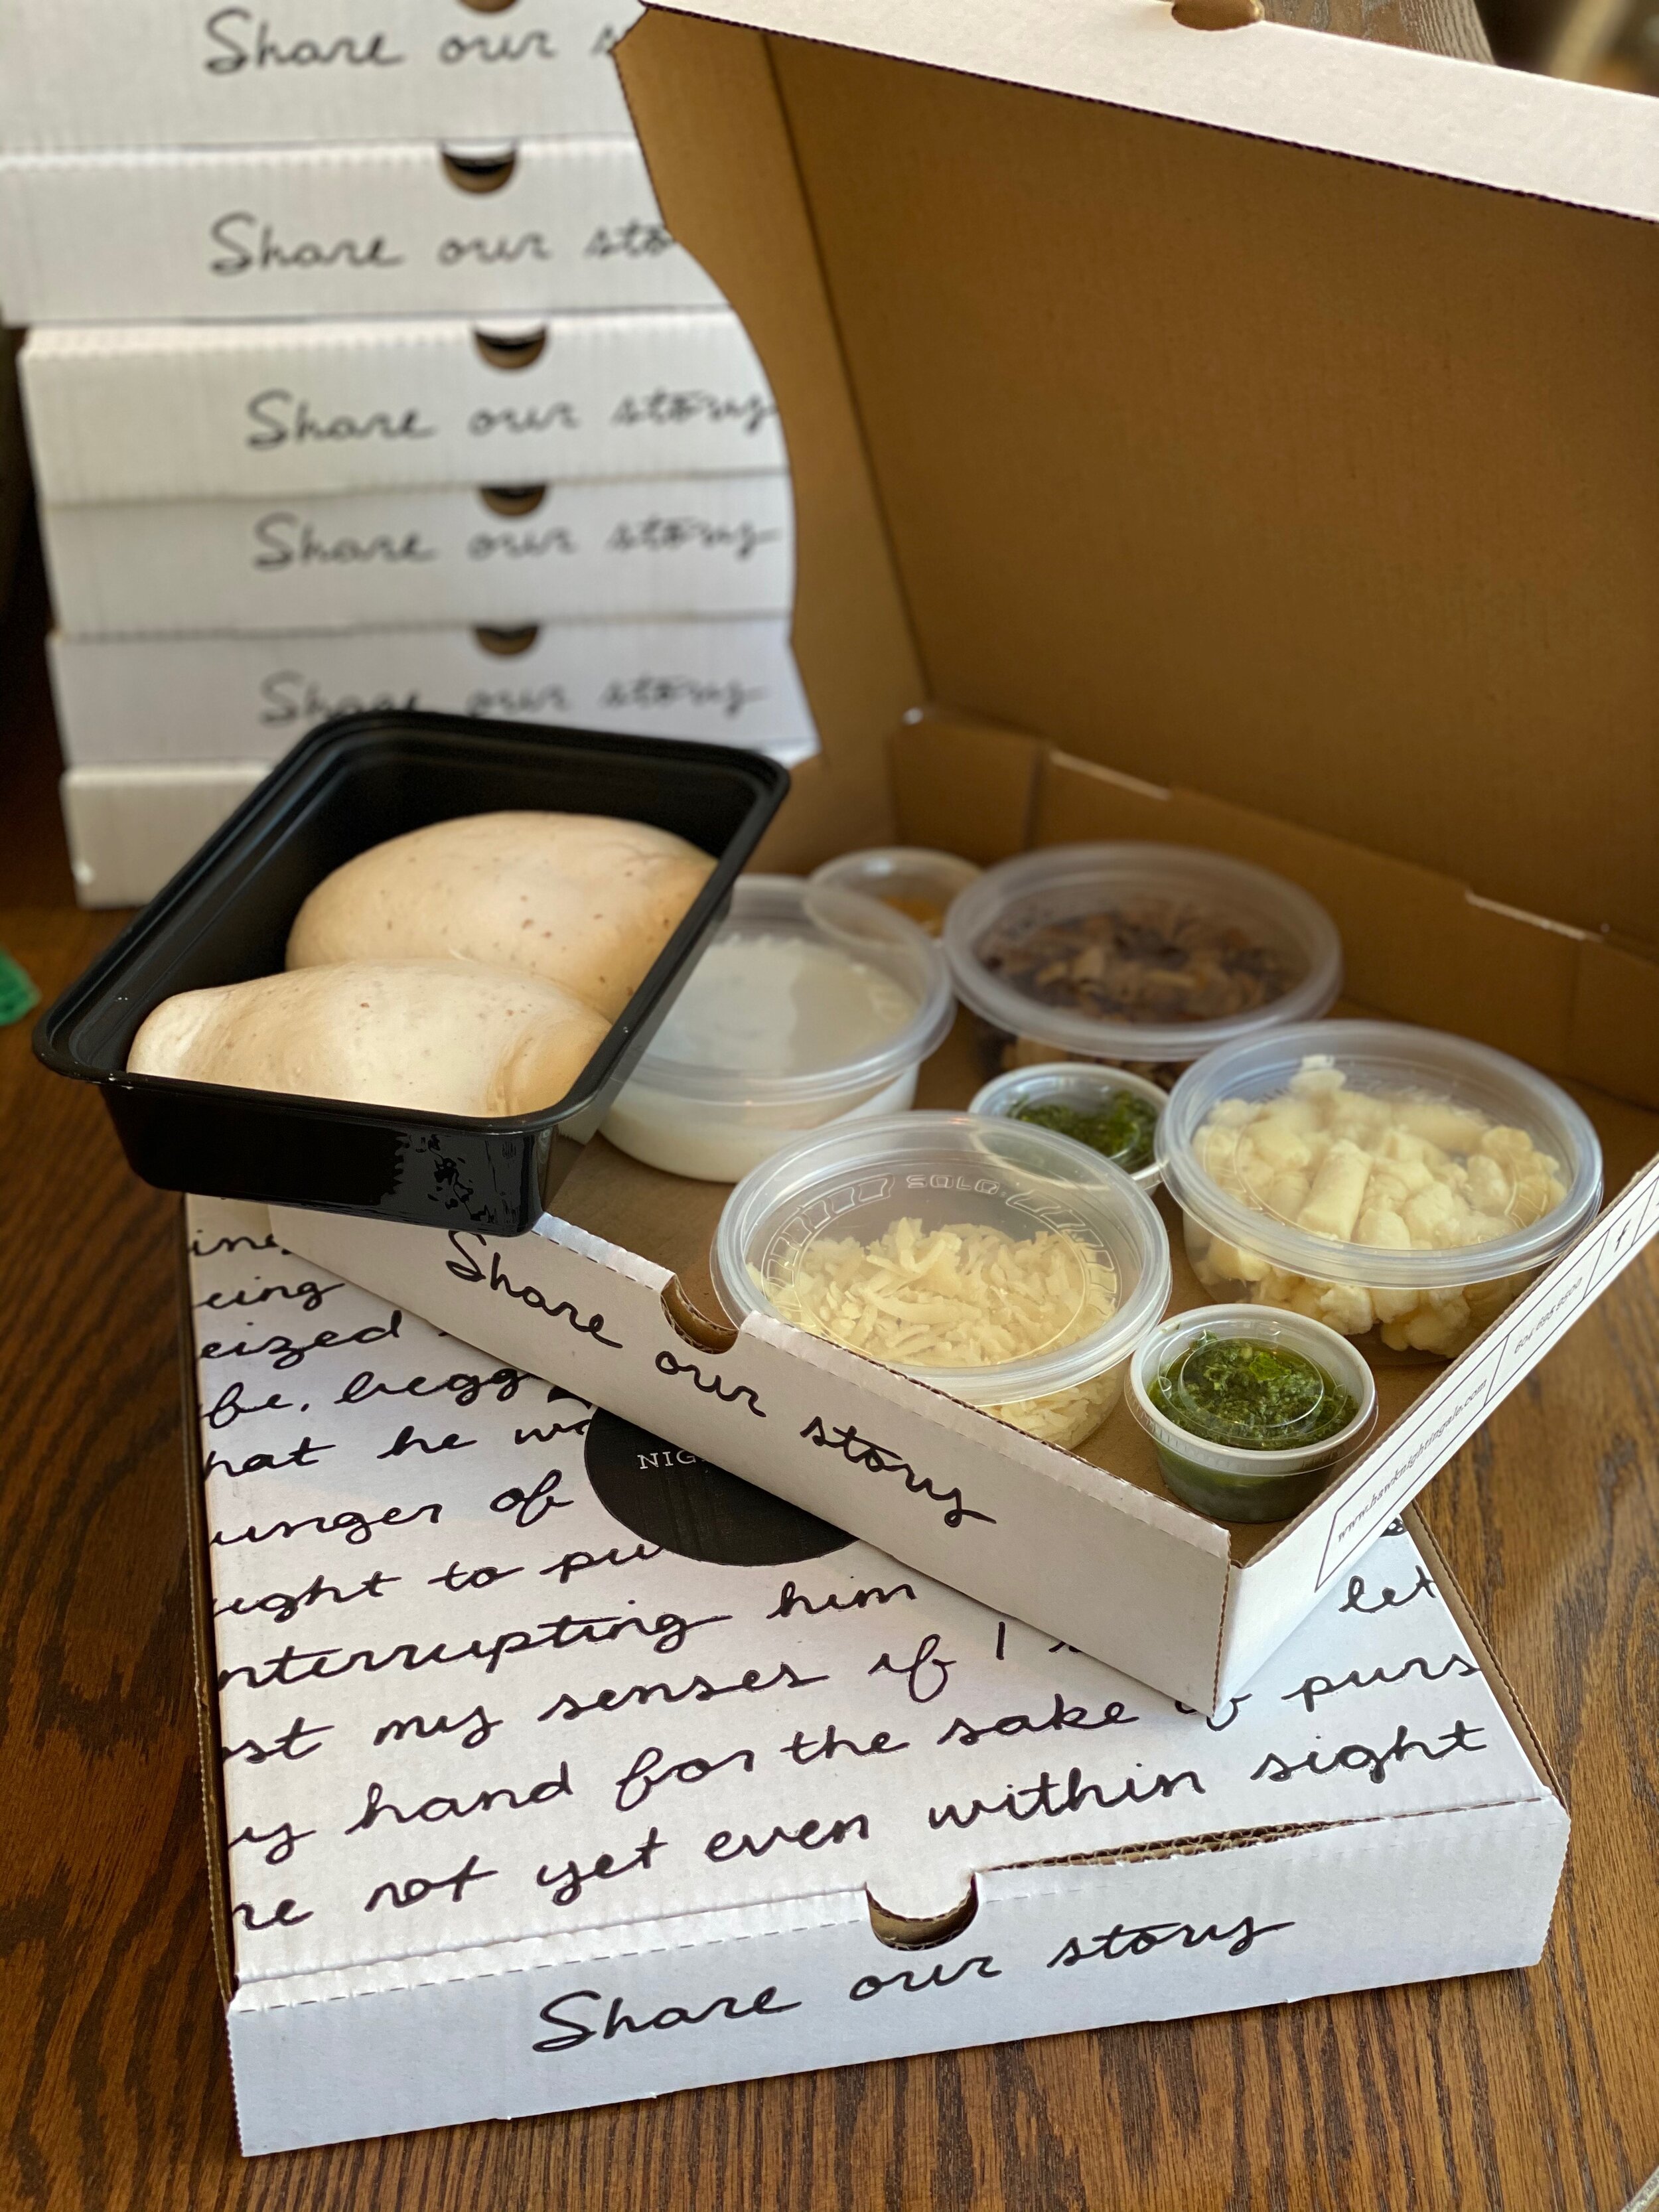 Gift Set Pizza Kit